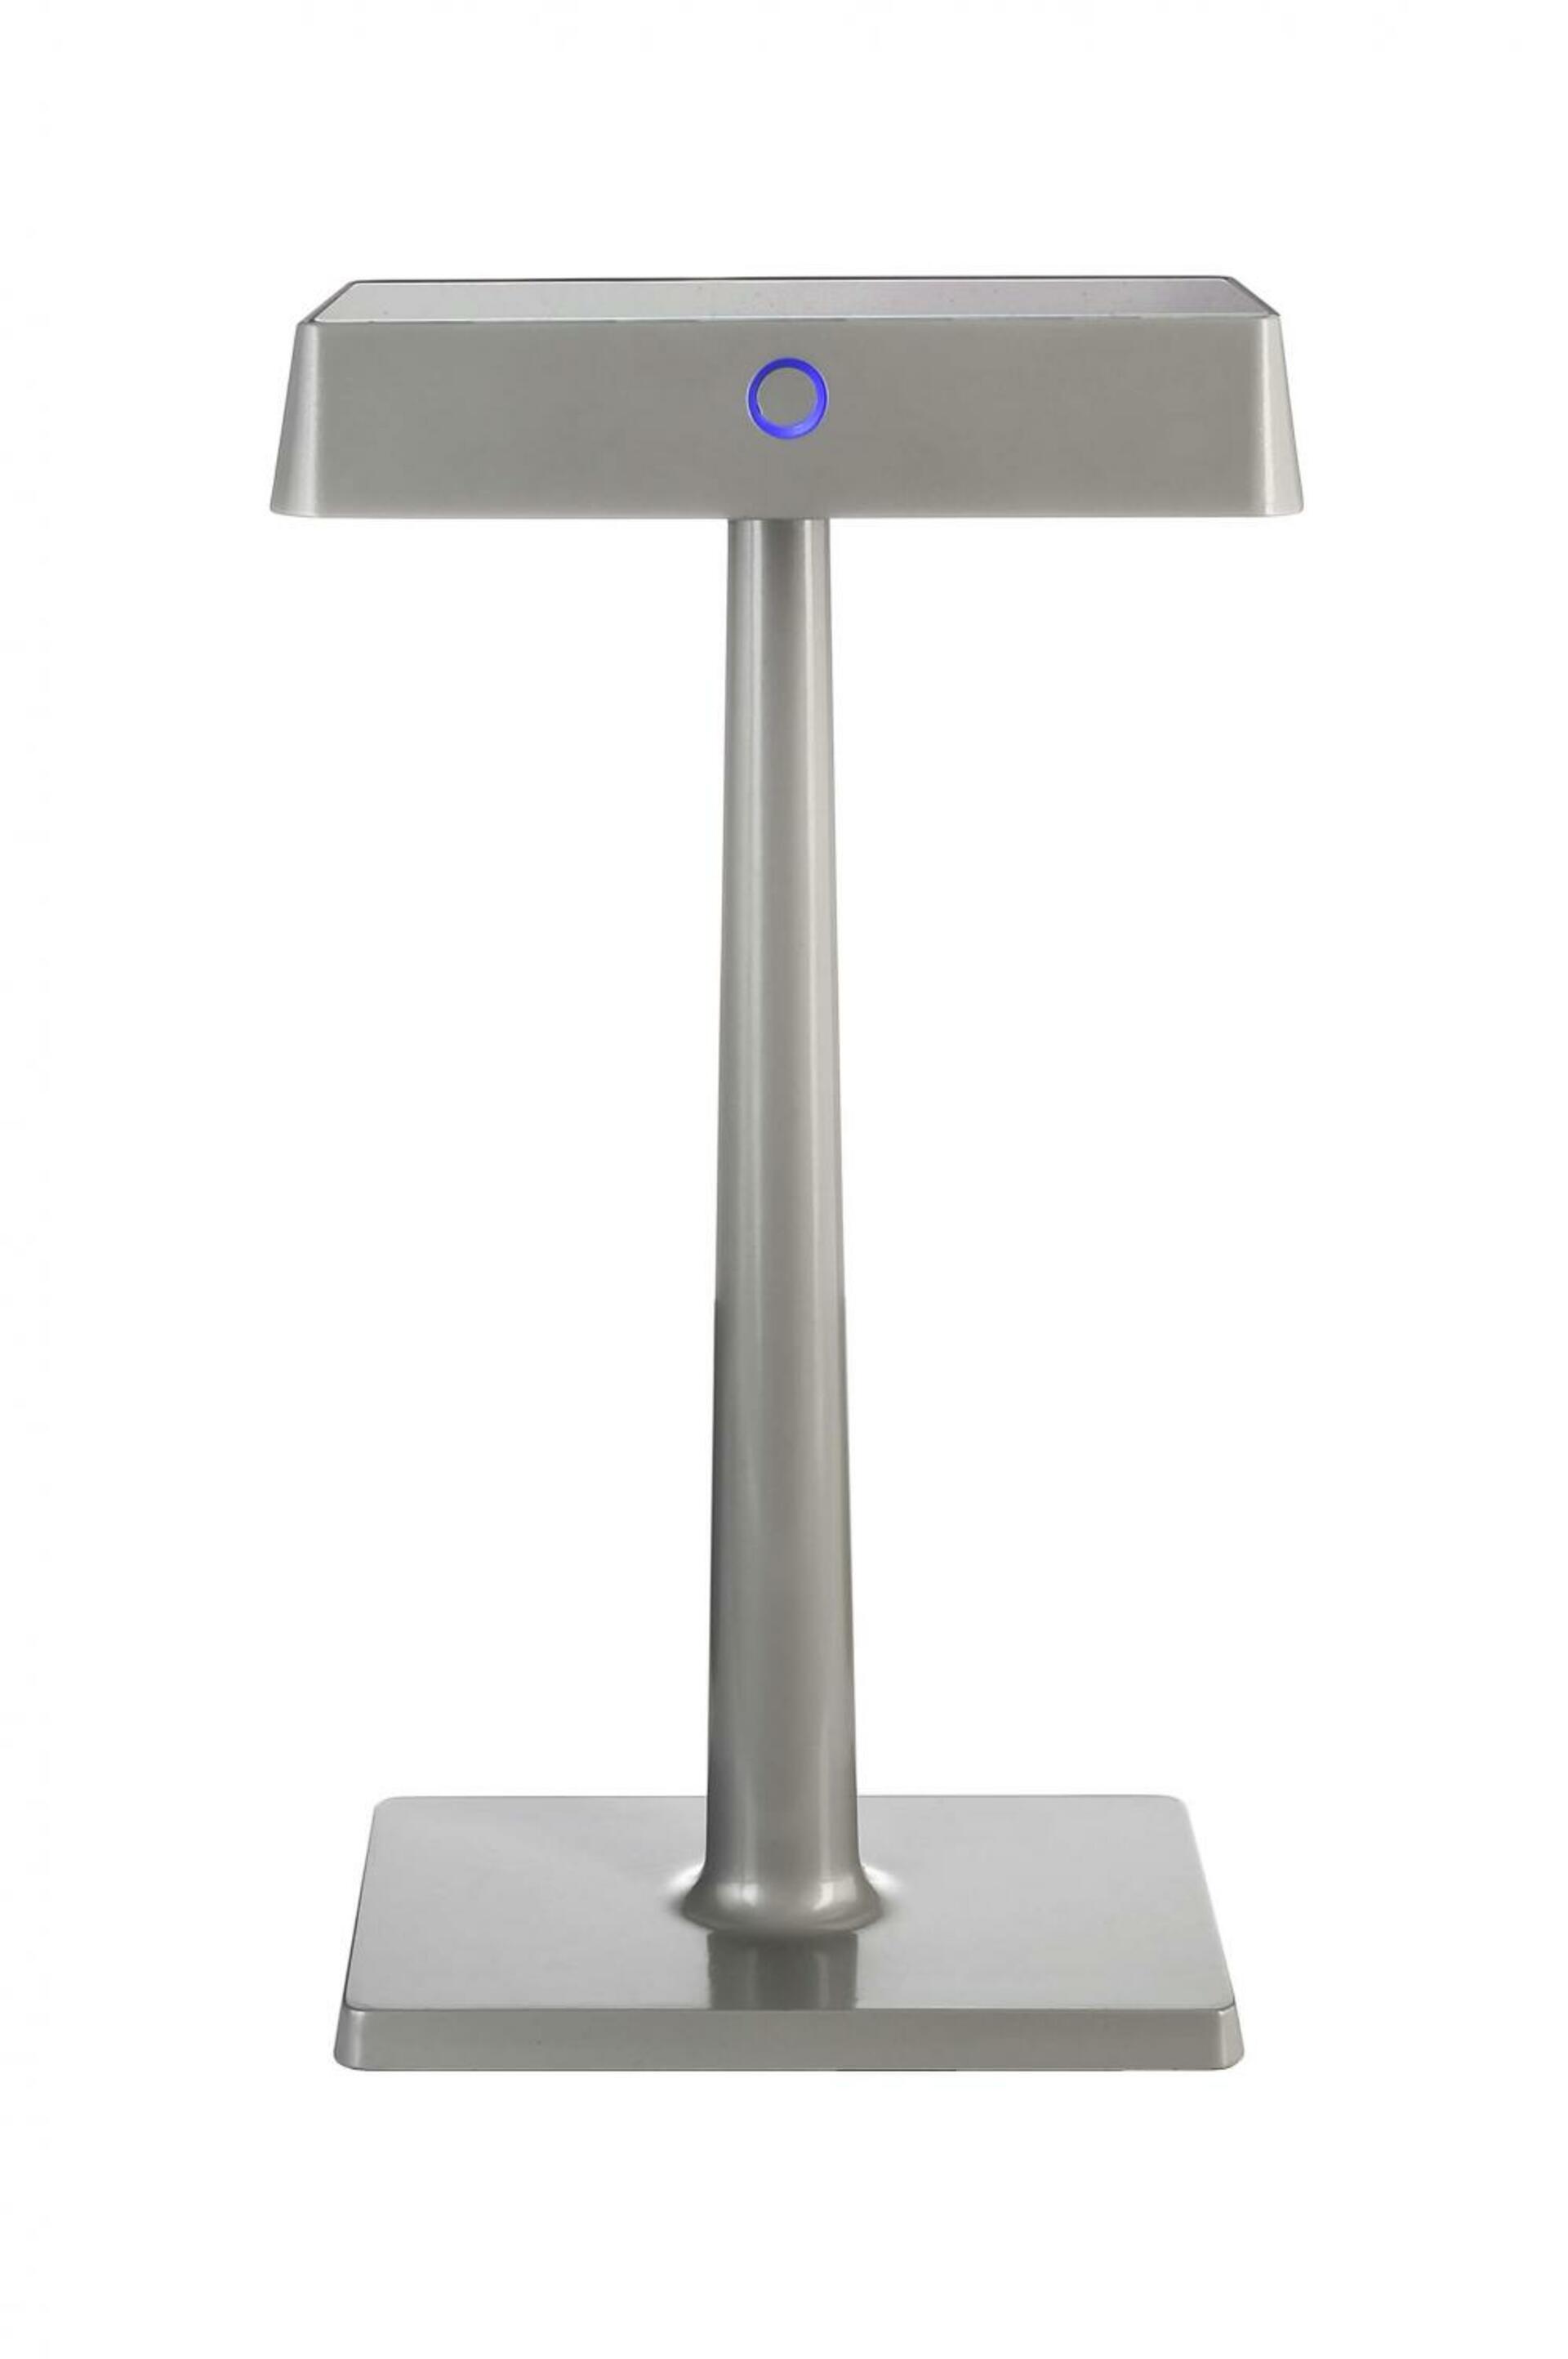 Light Impressions Deko-Light stolní lampa Algieba 3,7V DC 2,20 W 3000 K 212 lm 175 šedá s bezdrátovým nabíjením telefonu 346040